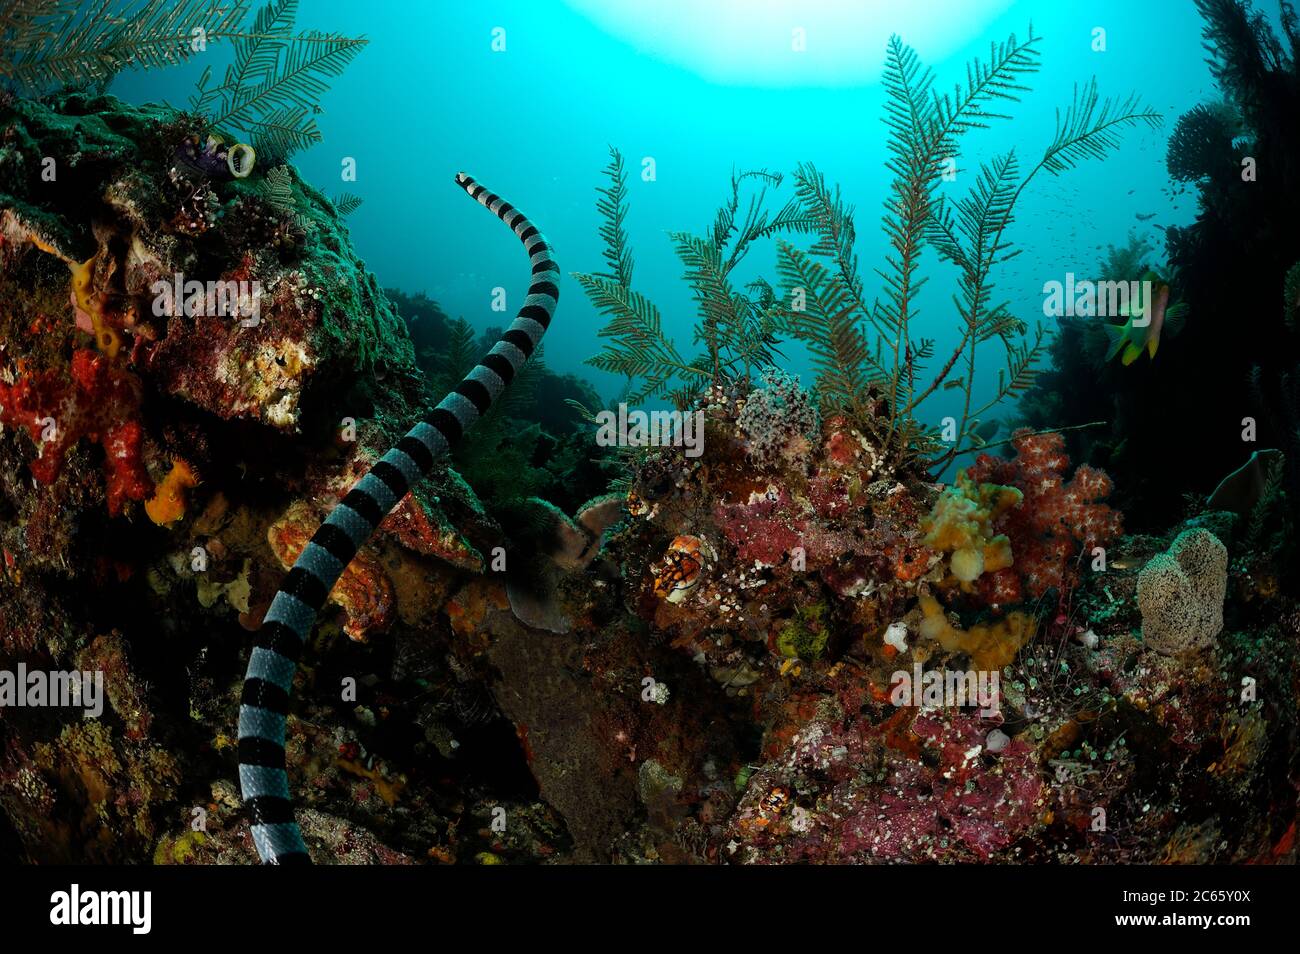 Belcher-Seeschlange (Hydrophis belcheri) Raja Ampat, West Papua, Indonesien, Pazifischer Ozean [Größe eines einzigen Organismus: 1,2 m] Stockfoto